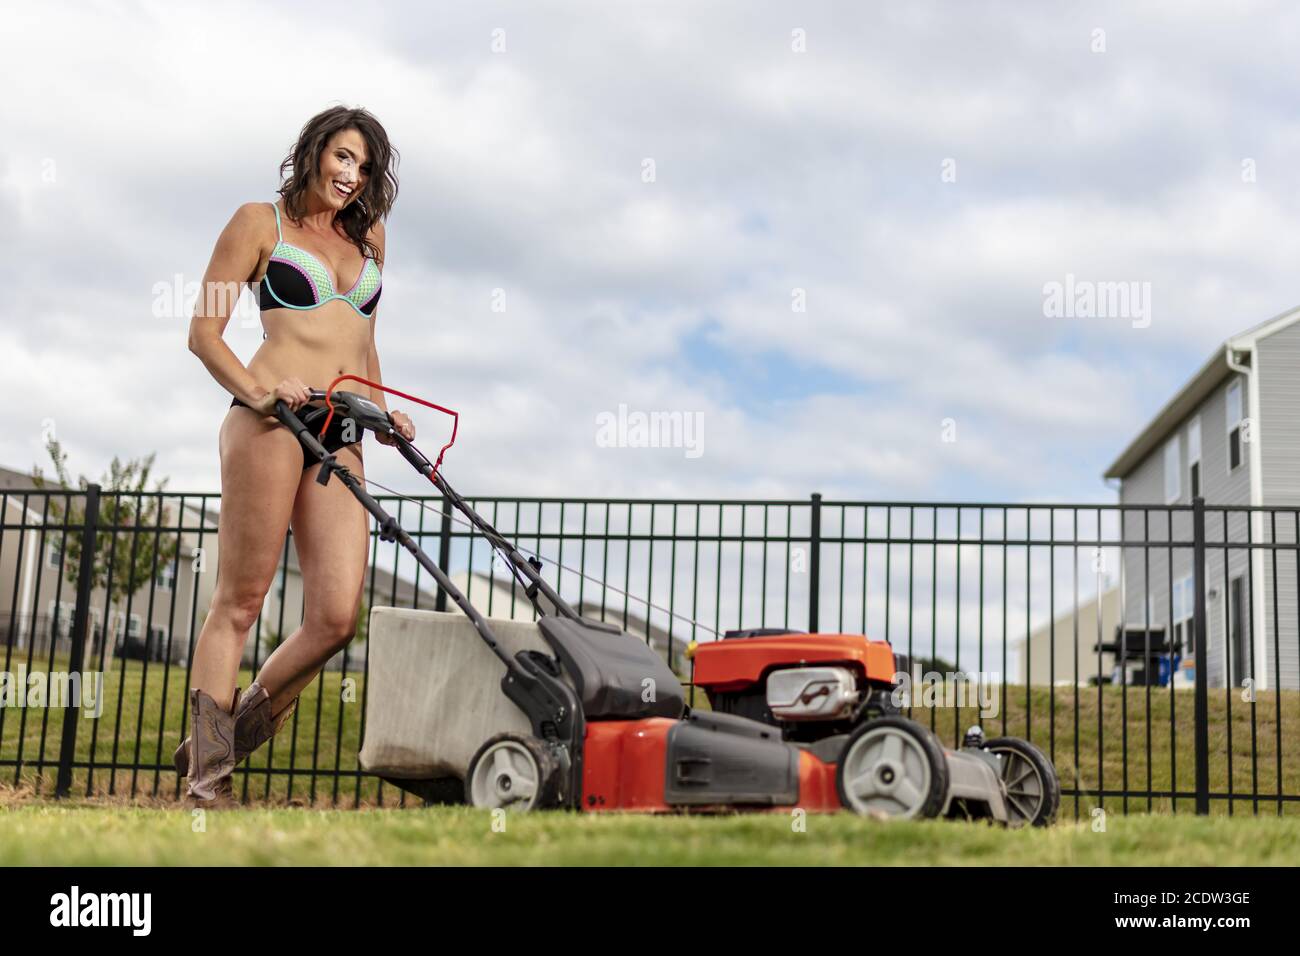 Ein wunderschönes Bikini-verkleidetes Modell, das den Rasen mäht Stockfoto